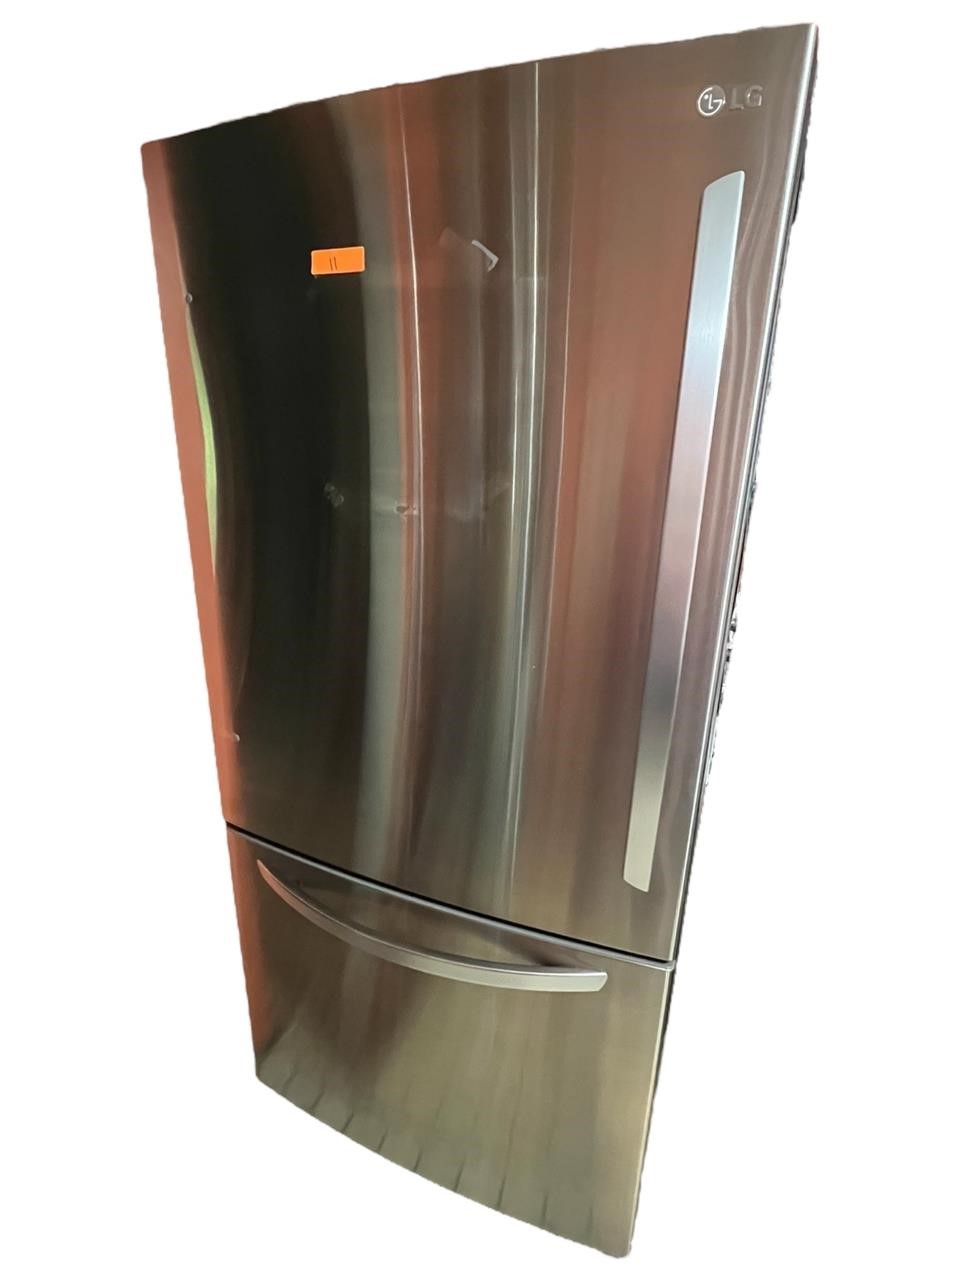 LG Stainless steel fridge